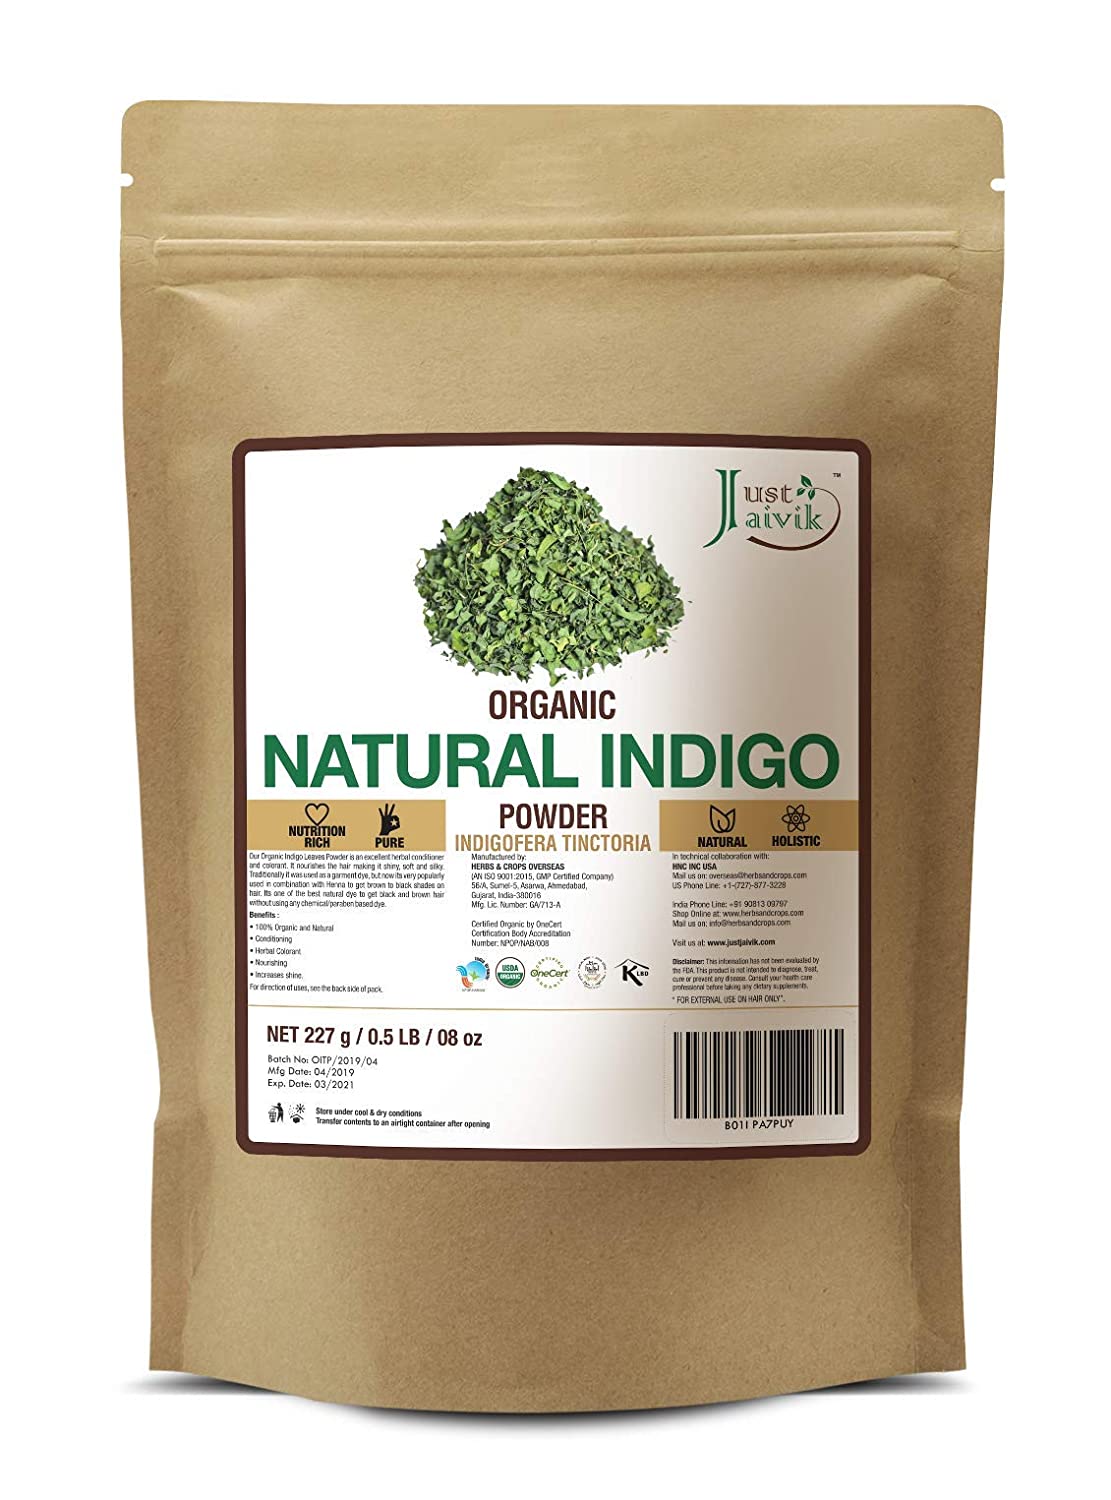  Just Jaivik Organic Indigo Powder